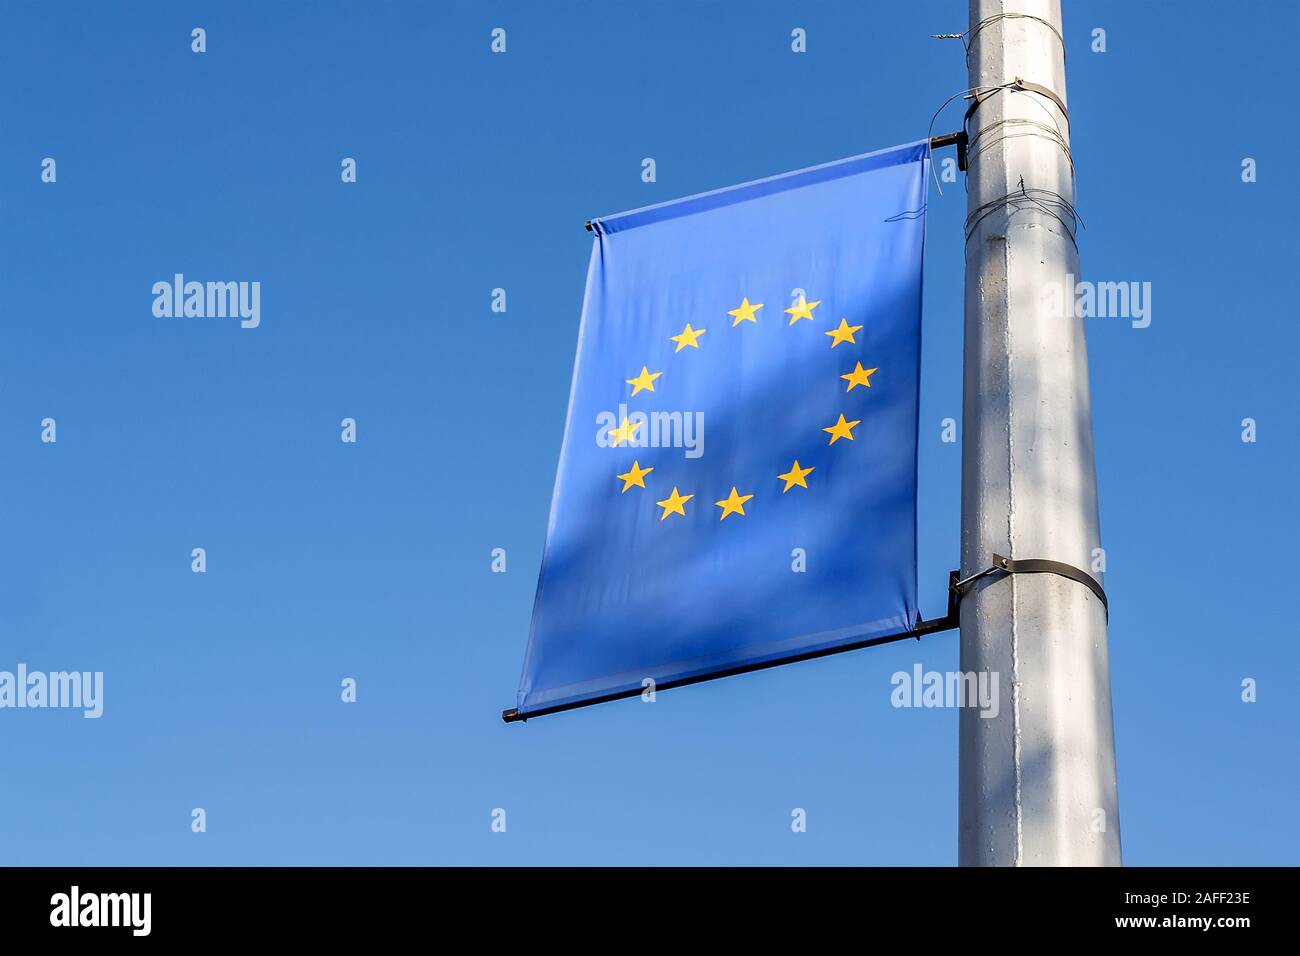 Hãy chiêm ngưỡng cờ Liên minh Châu Âu đầy tinh tế, mang trong mình thông điệp về sự đoàn kết và hòa bình giữa các quốc gia châu Âu.